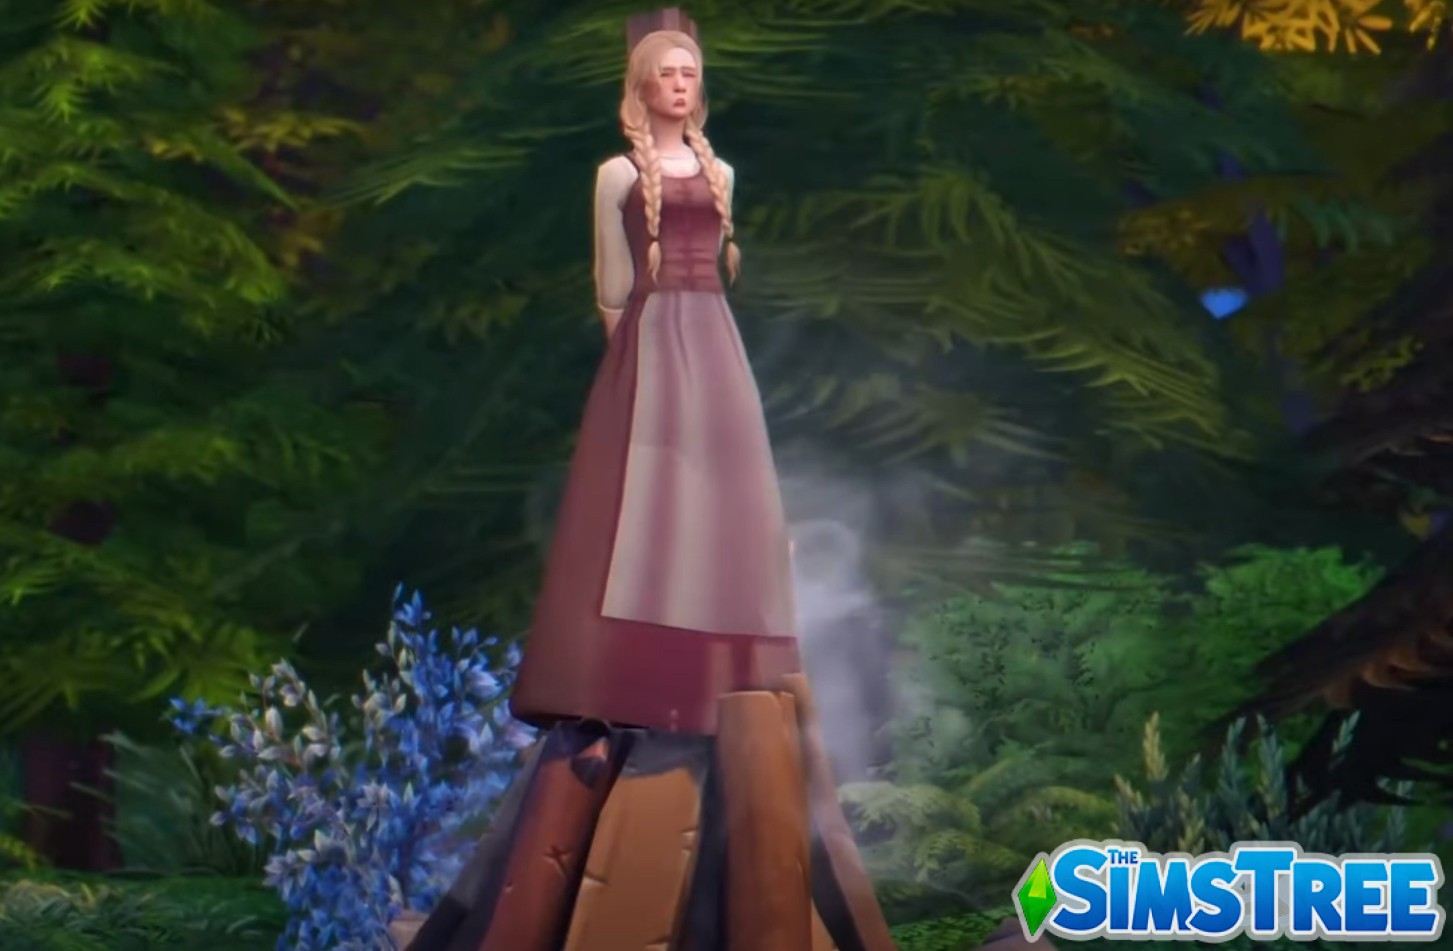 Мод «Королевская жизнь 2.7.7 Подземелья и Смерть или Royalty Mod» от llazyneiph для Sims 4